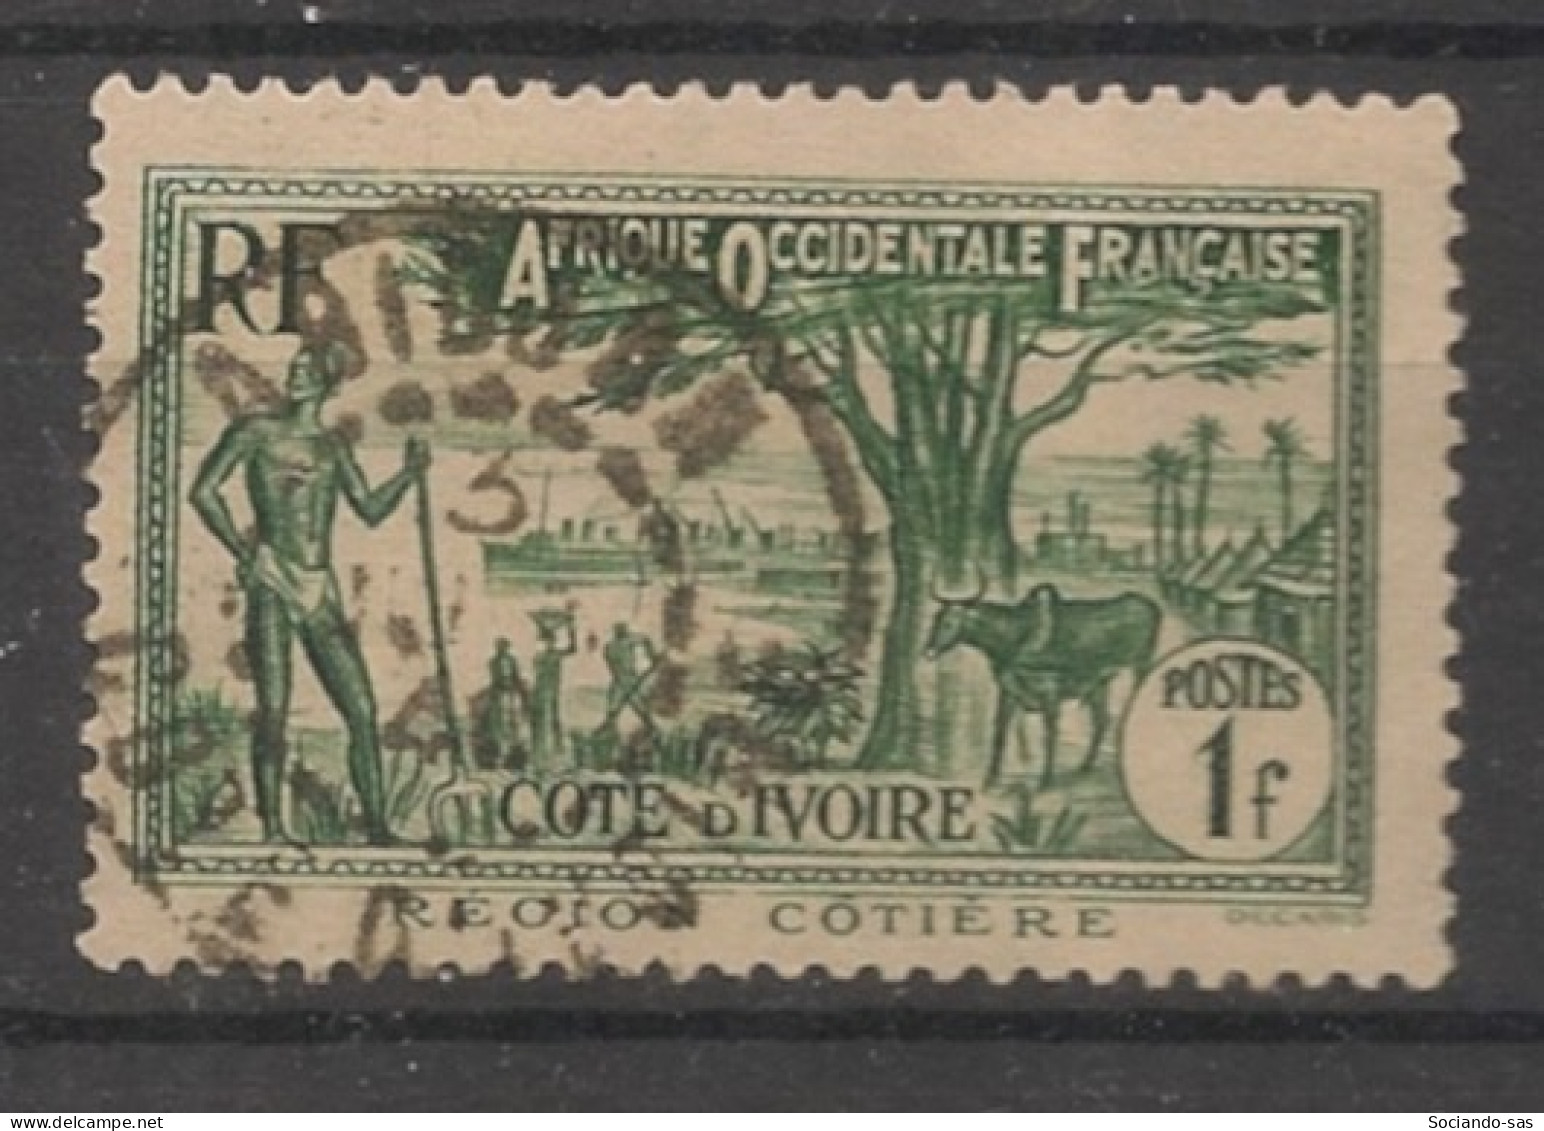 COTE D'IVOIRE - 1936-38 - N°YT. 124 - Mosquée 1f Vert-foncé - Oblitéré / Used - Used Stamps